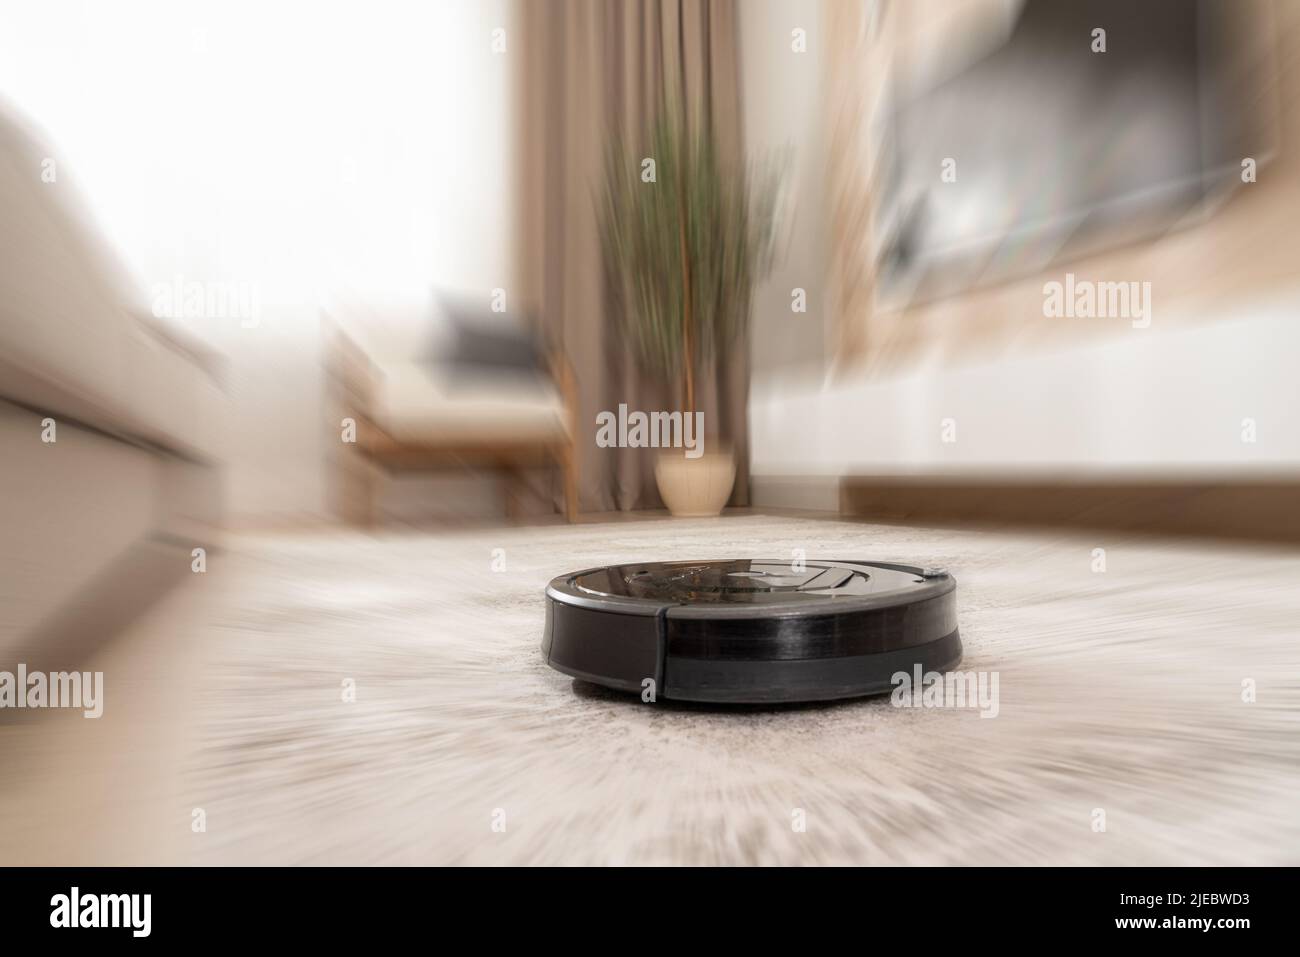 pulizia automatica dei tappeti in un moderno aspirapolvere robot con effetto motion blur Foto Stock